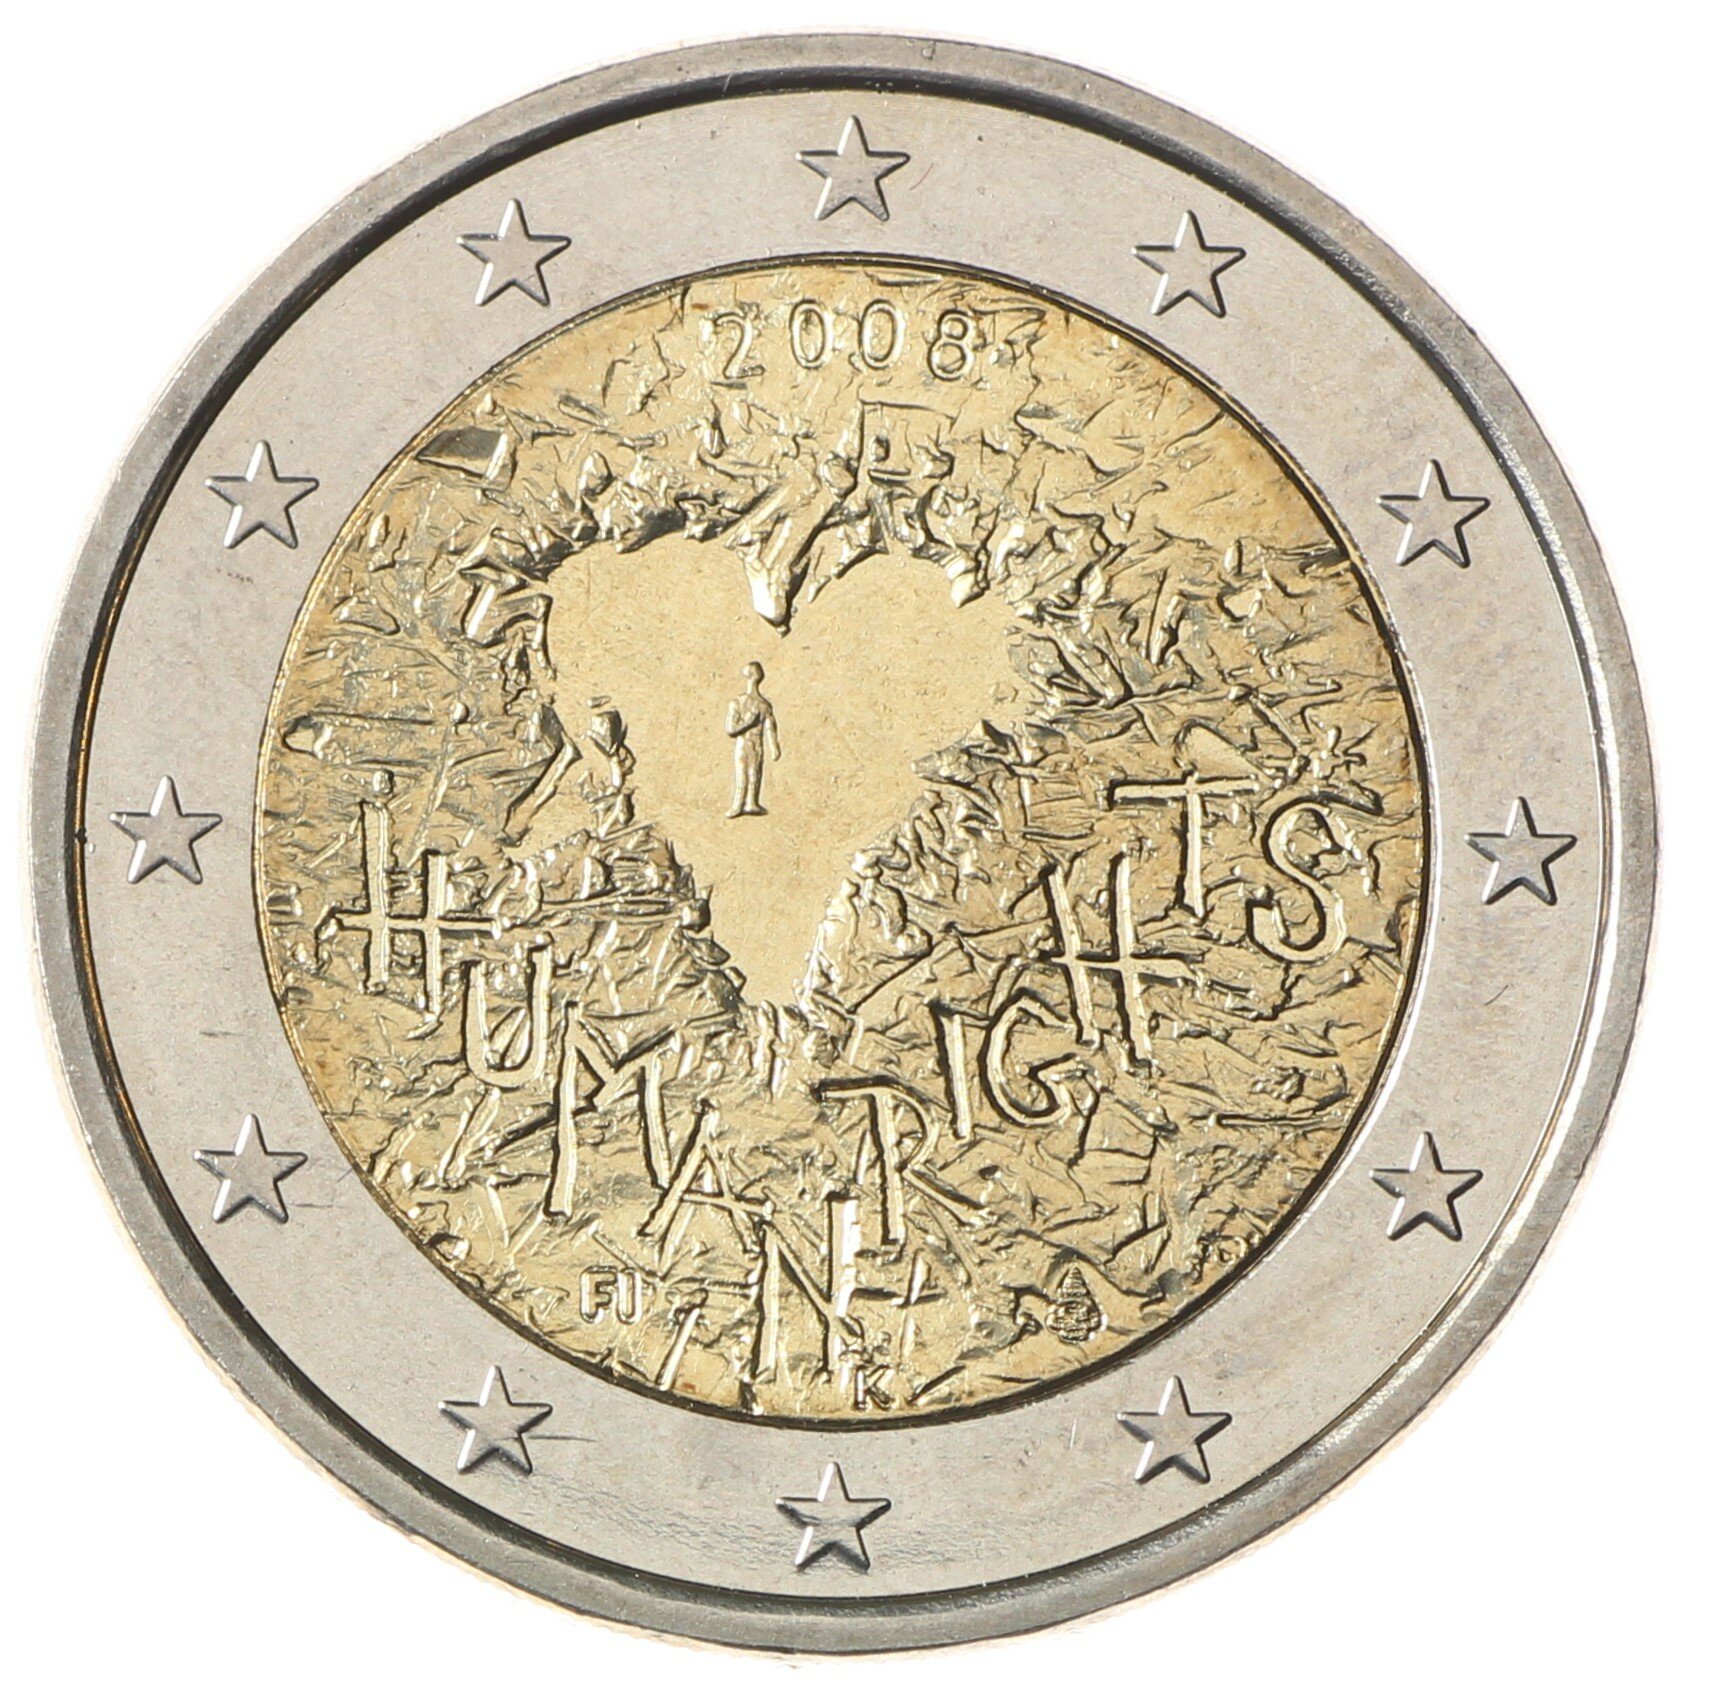 Финляндия 2 евро 2008 Права человека